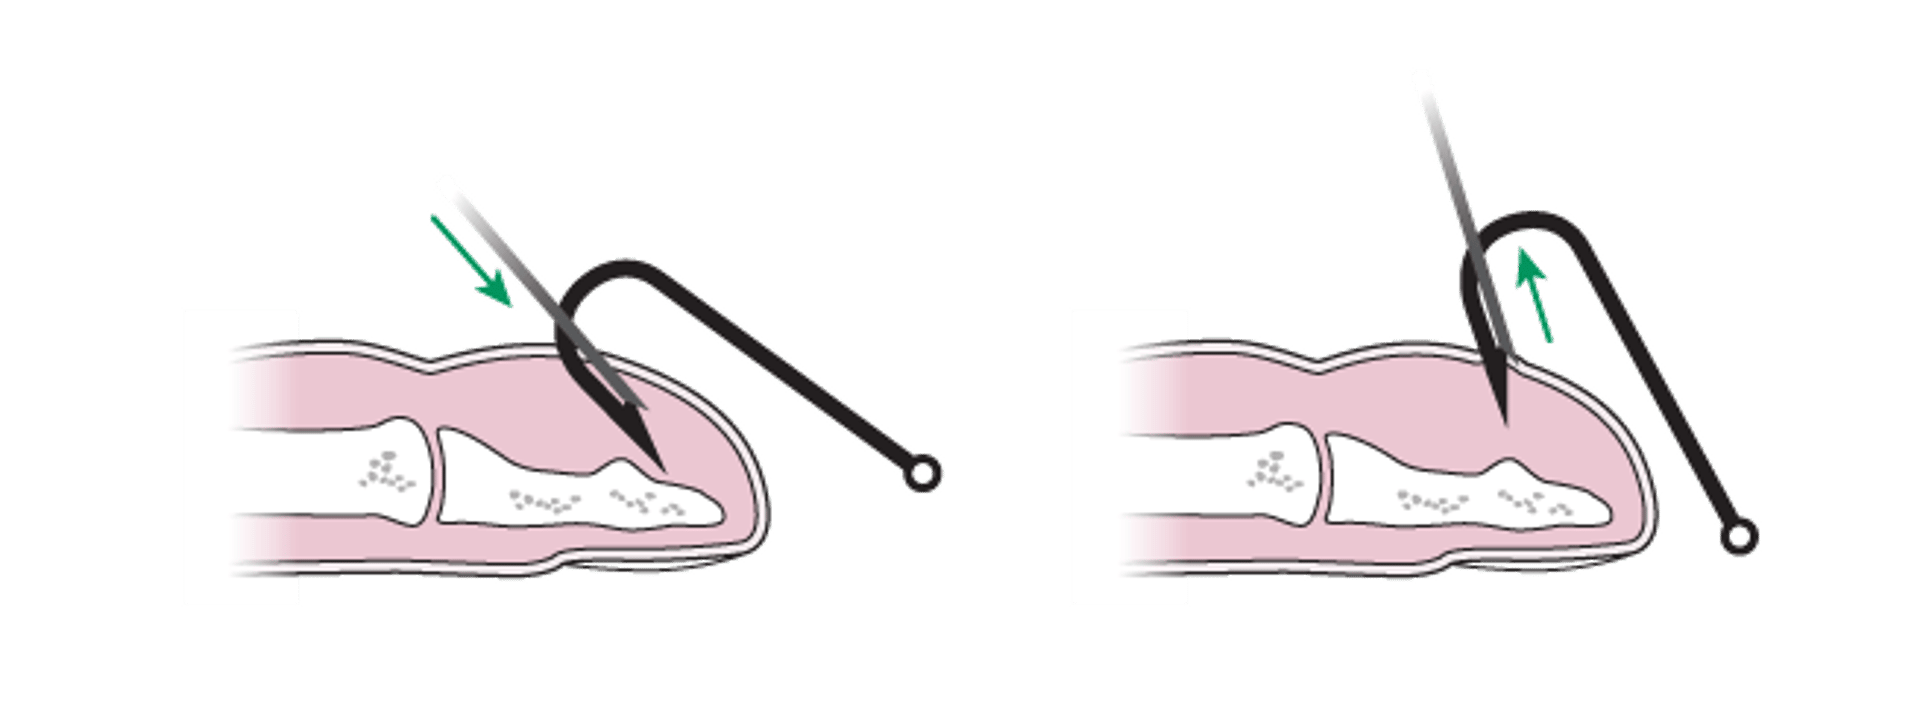 Ablation des hameçons: méthode de couverture par aiguille